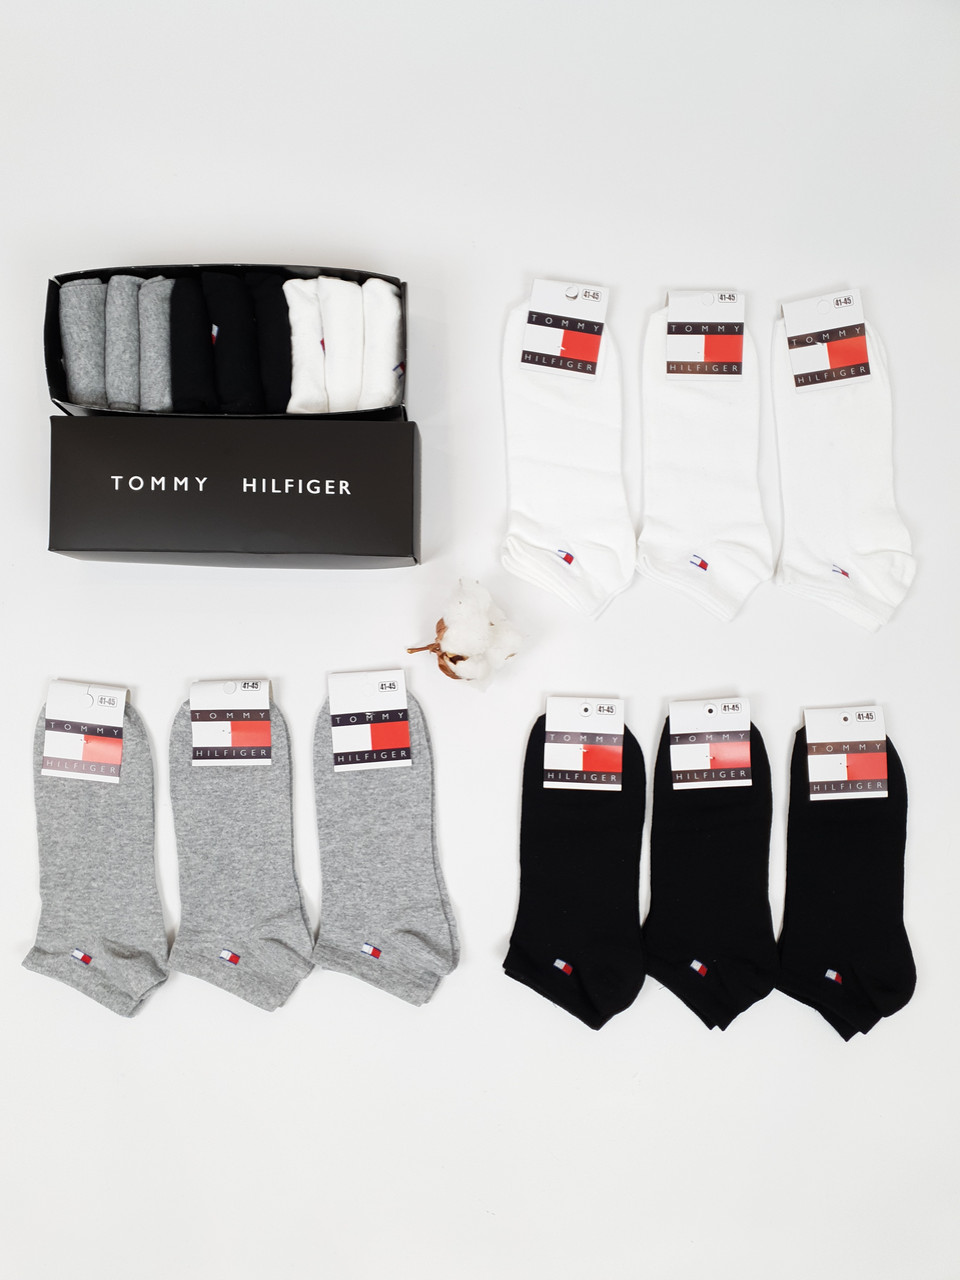 Короткі шкарпетки з бавовни набір 9 пар Tommy Hilfiger. Шкарпетки чоловічі низькі набір Томмі Хілфігер 41-45р 9шт